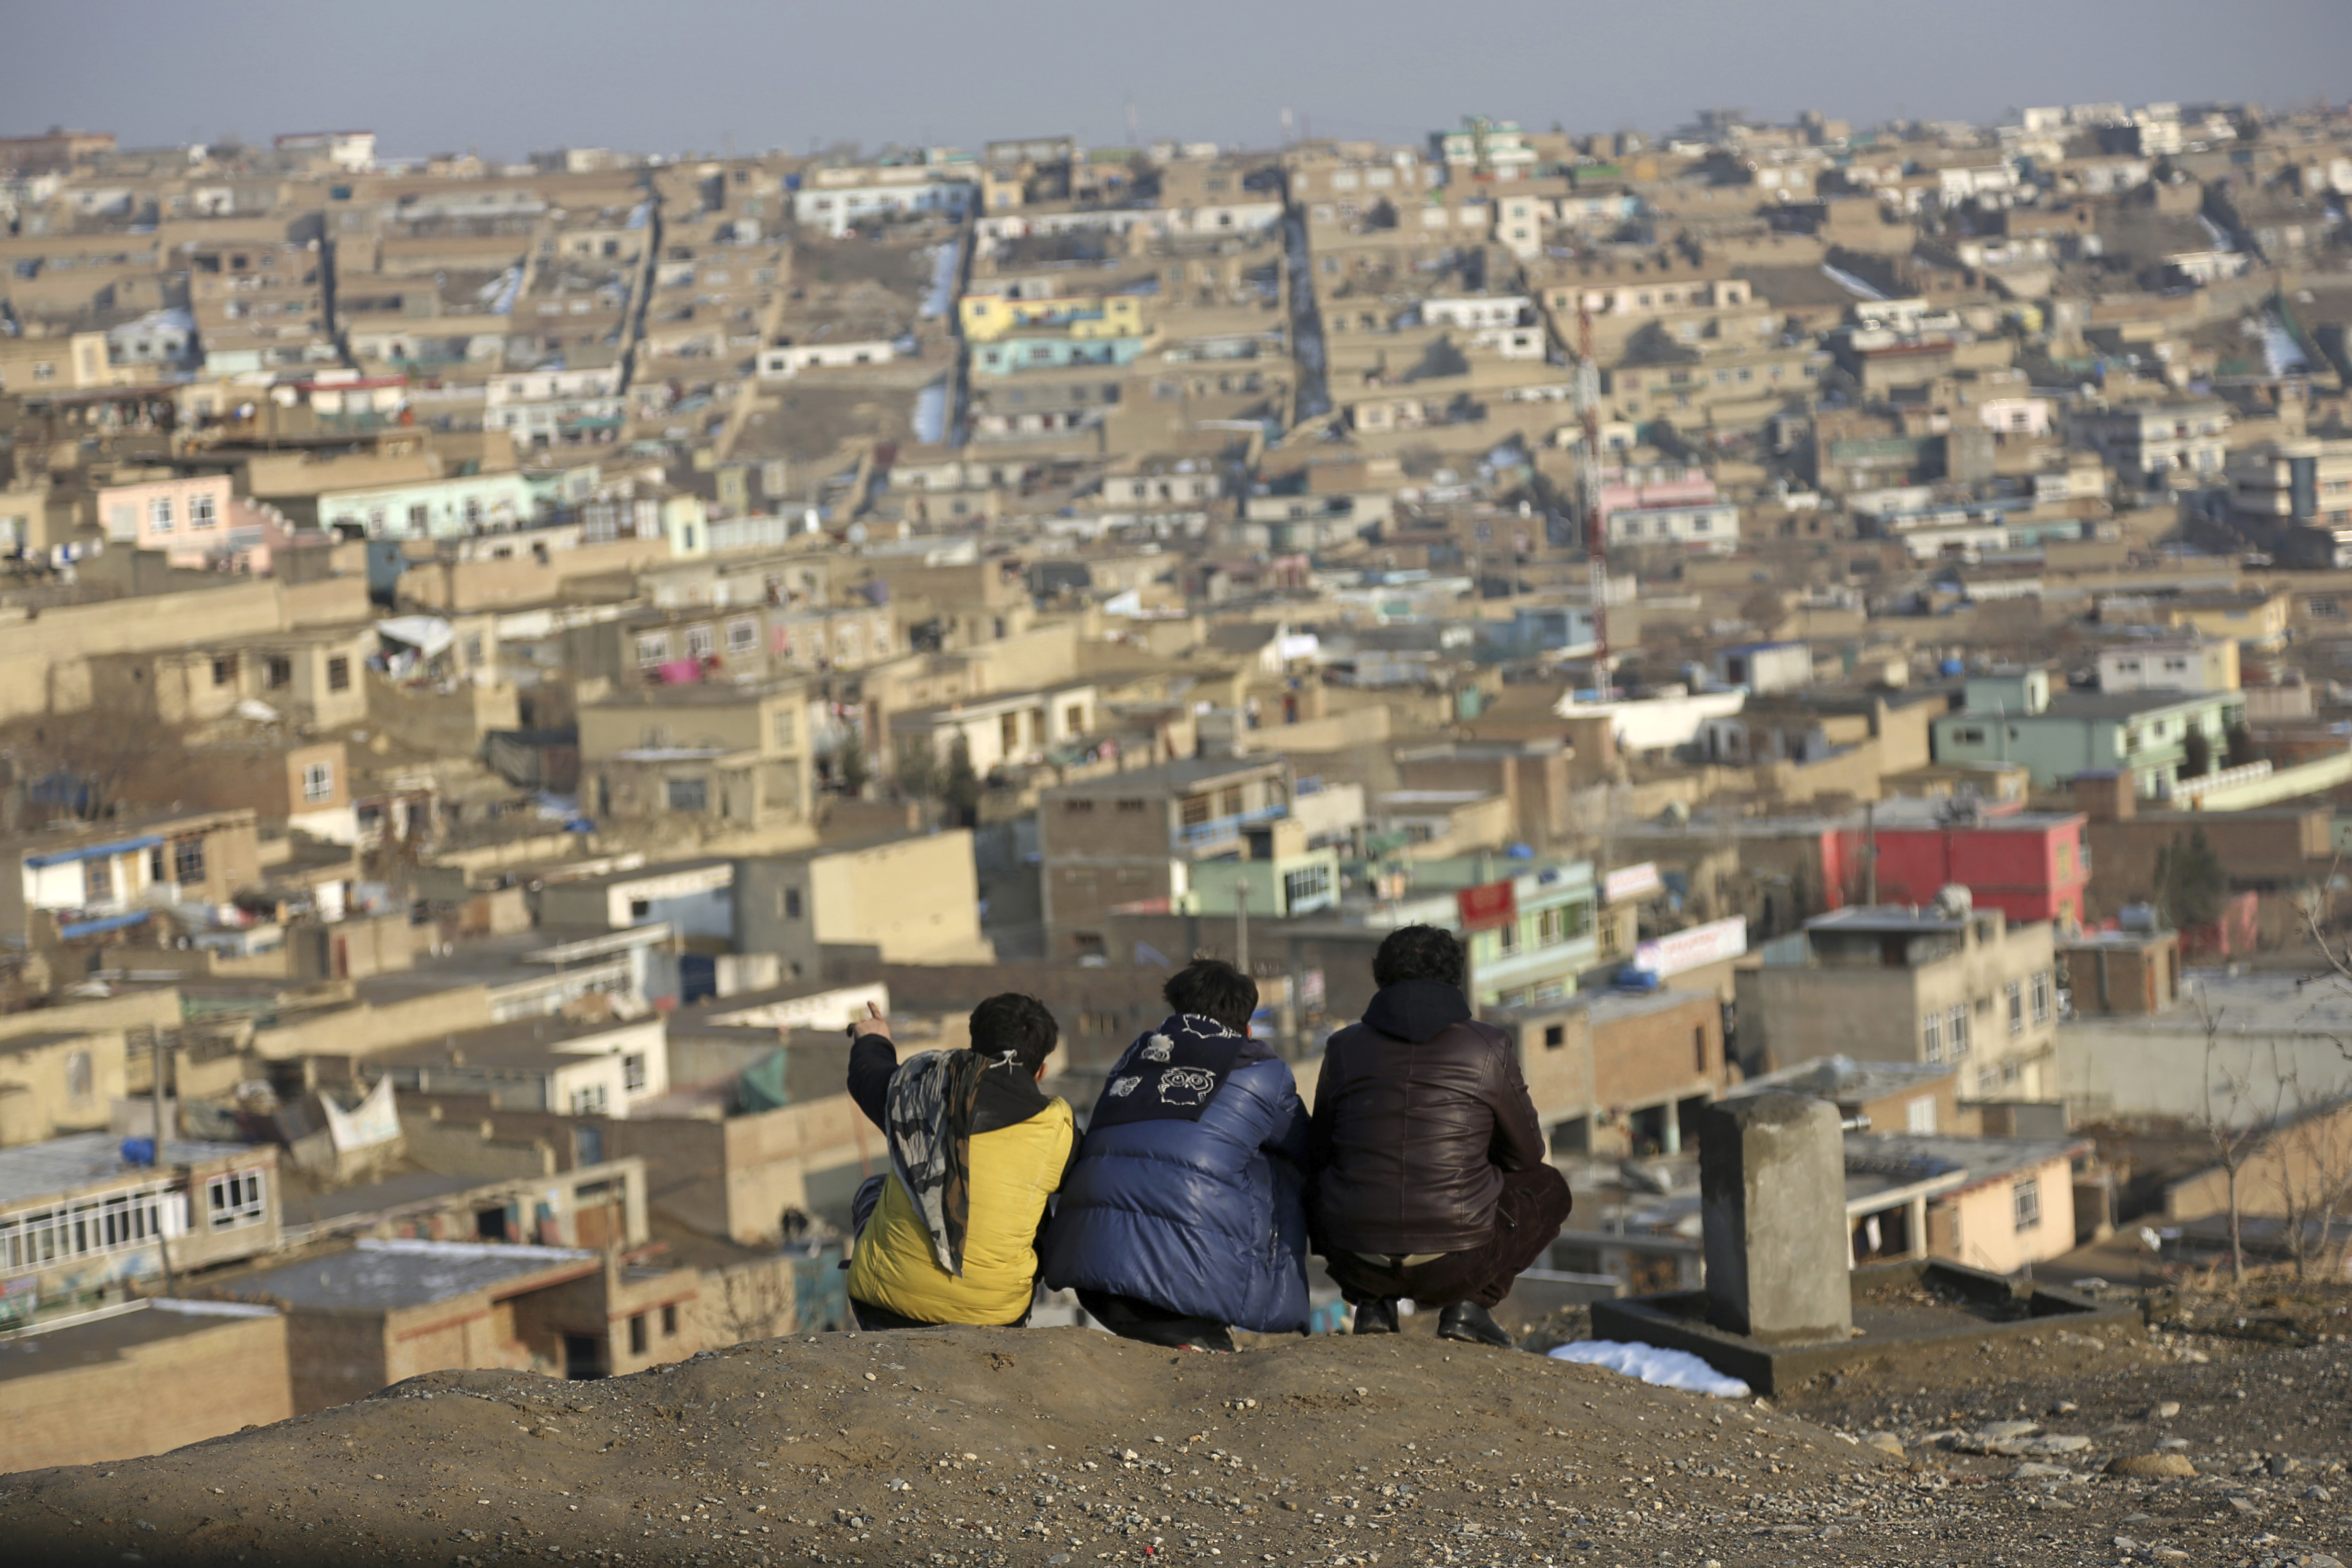 Afghan boys look over the city of Kabul, Afghanistan, Tuesday, Jan. 30, 2018. (AP Photo/Rahmat Gul)